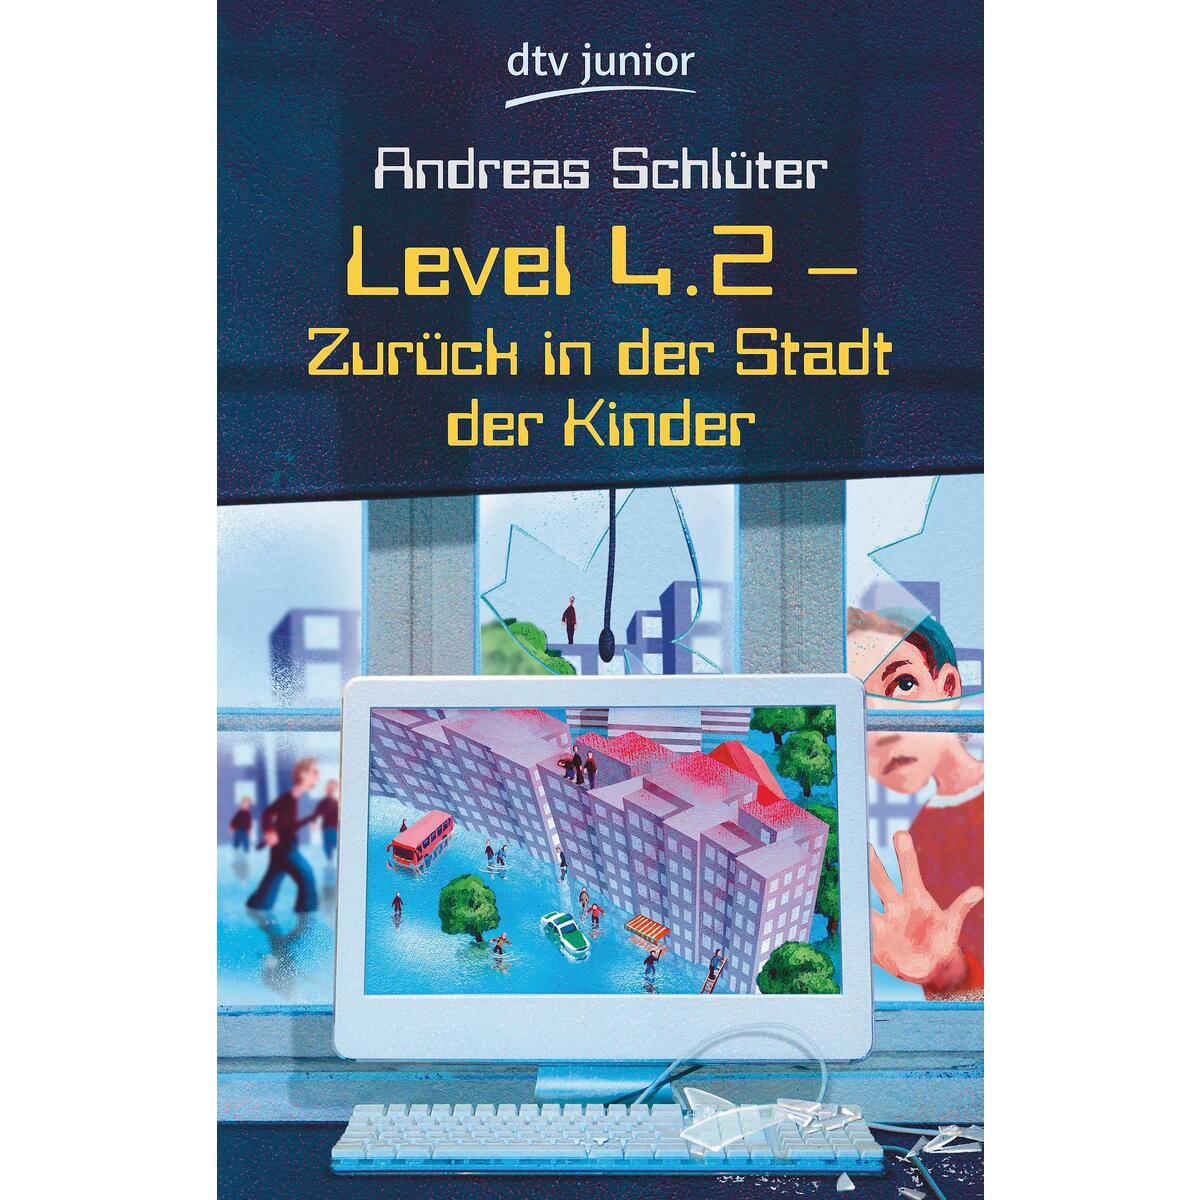 Level 4.2 von dtv Verlagsgesellschaft